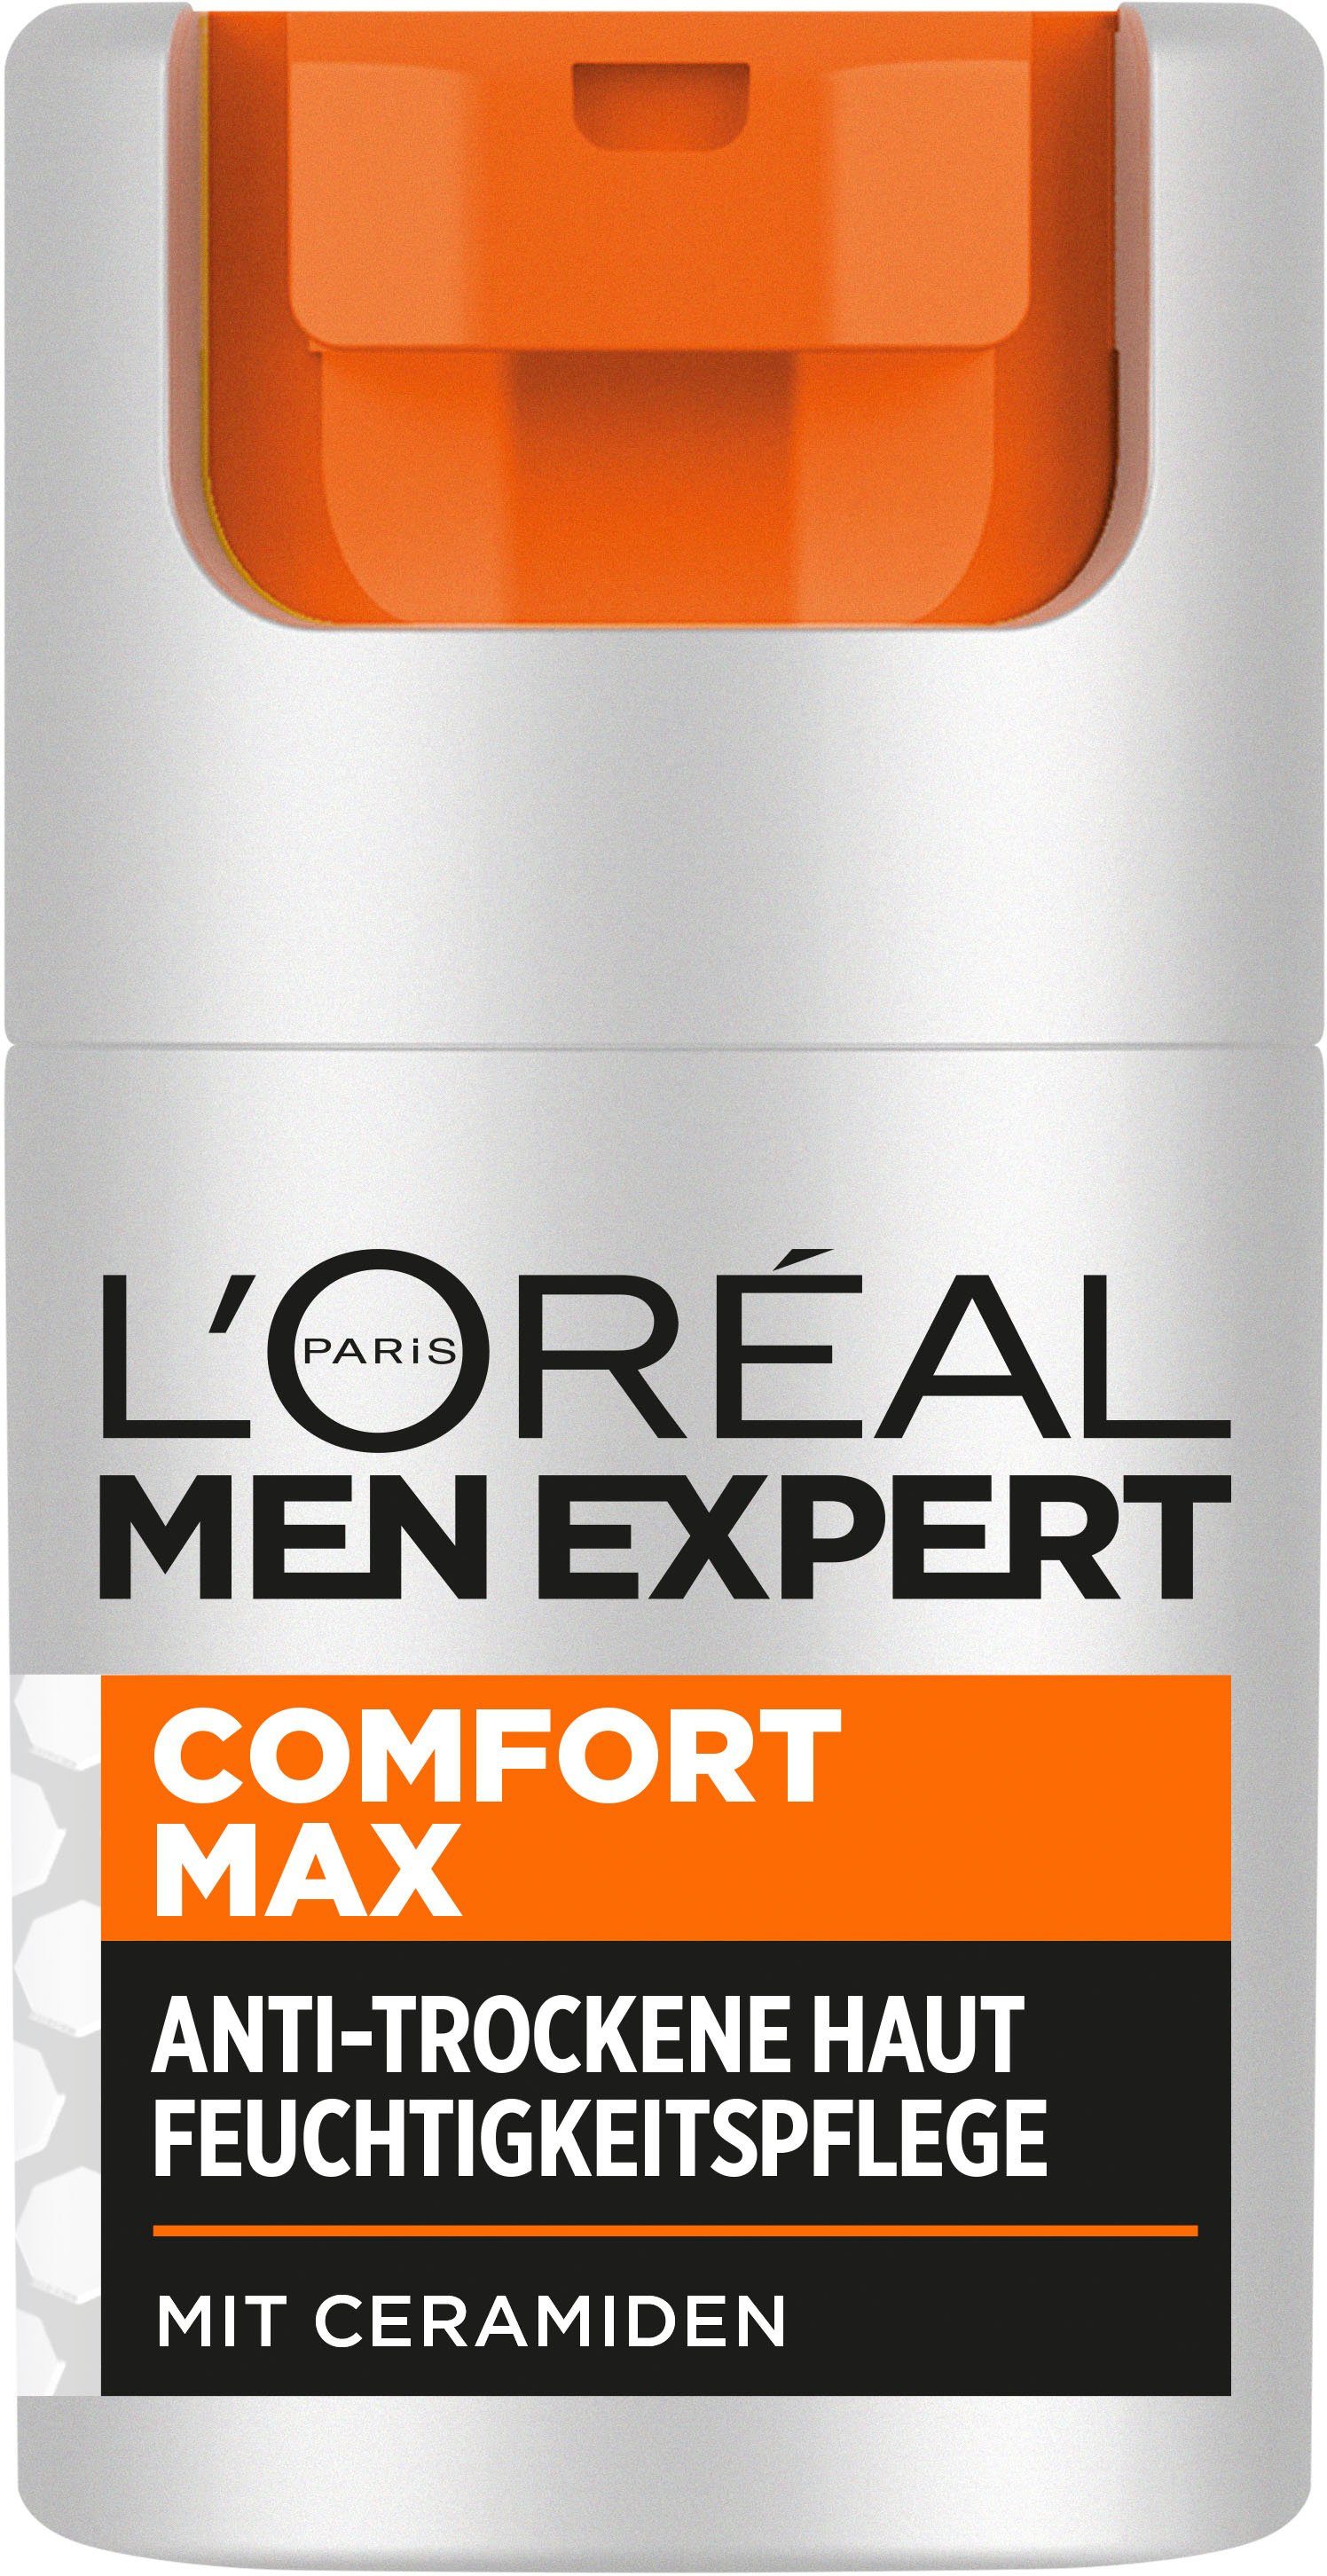 Men Feuchtigkeitspflege Expert Gesichtsgel Max PARIS EXPERT L'ORÉAL L'Oréal Comfort MEN